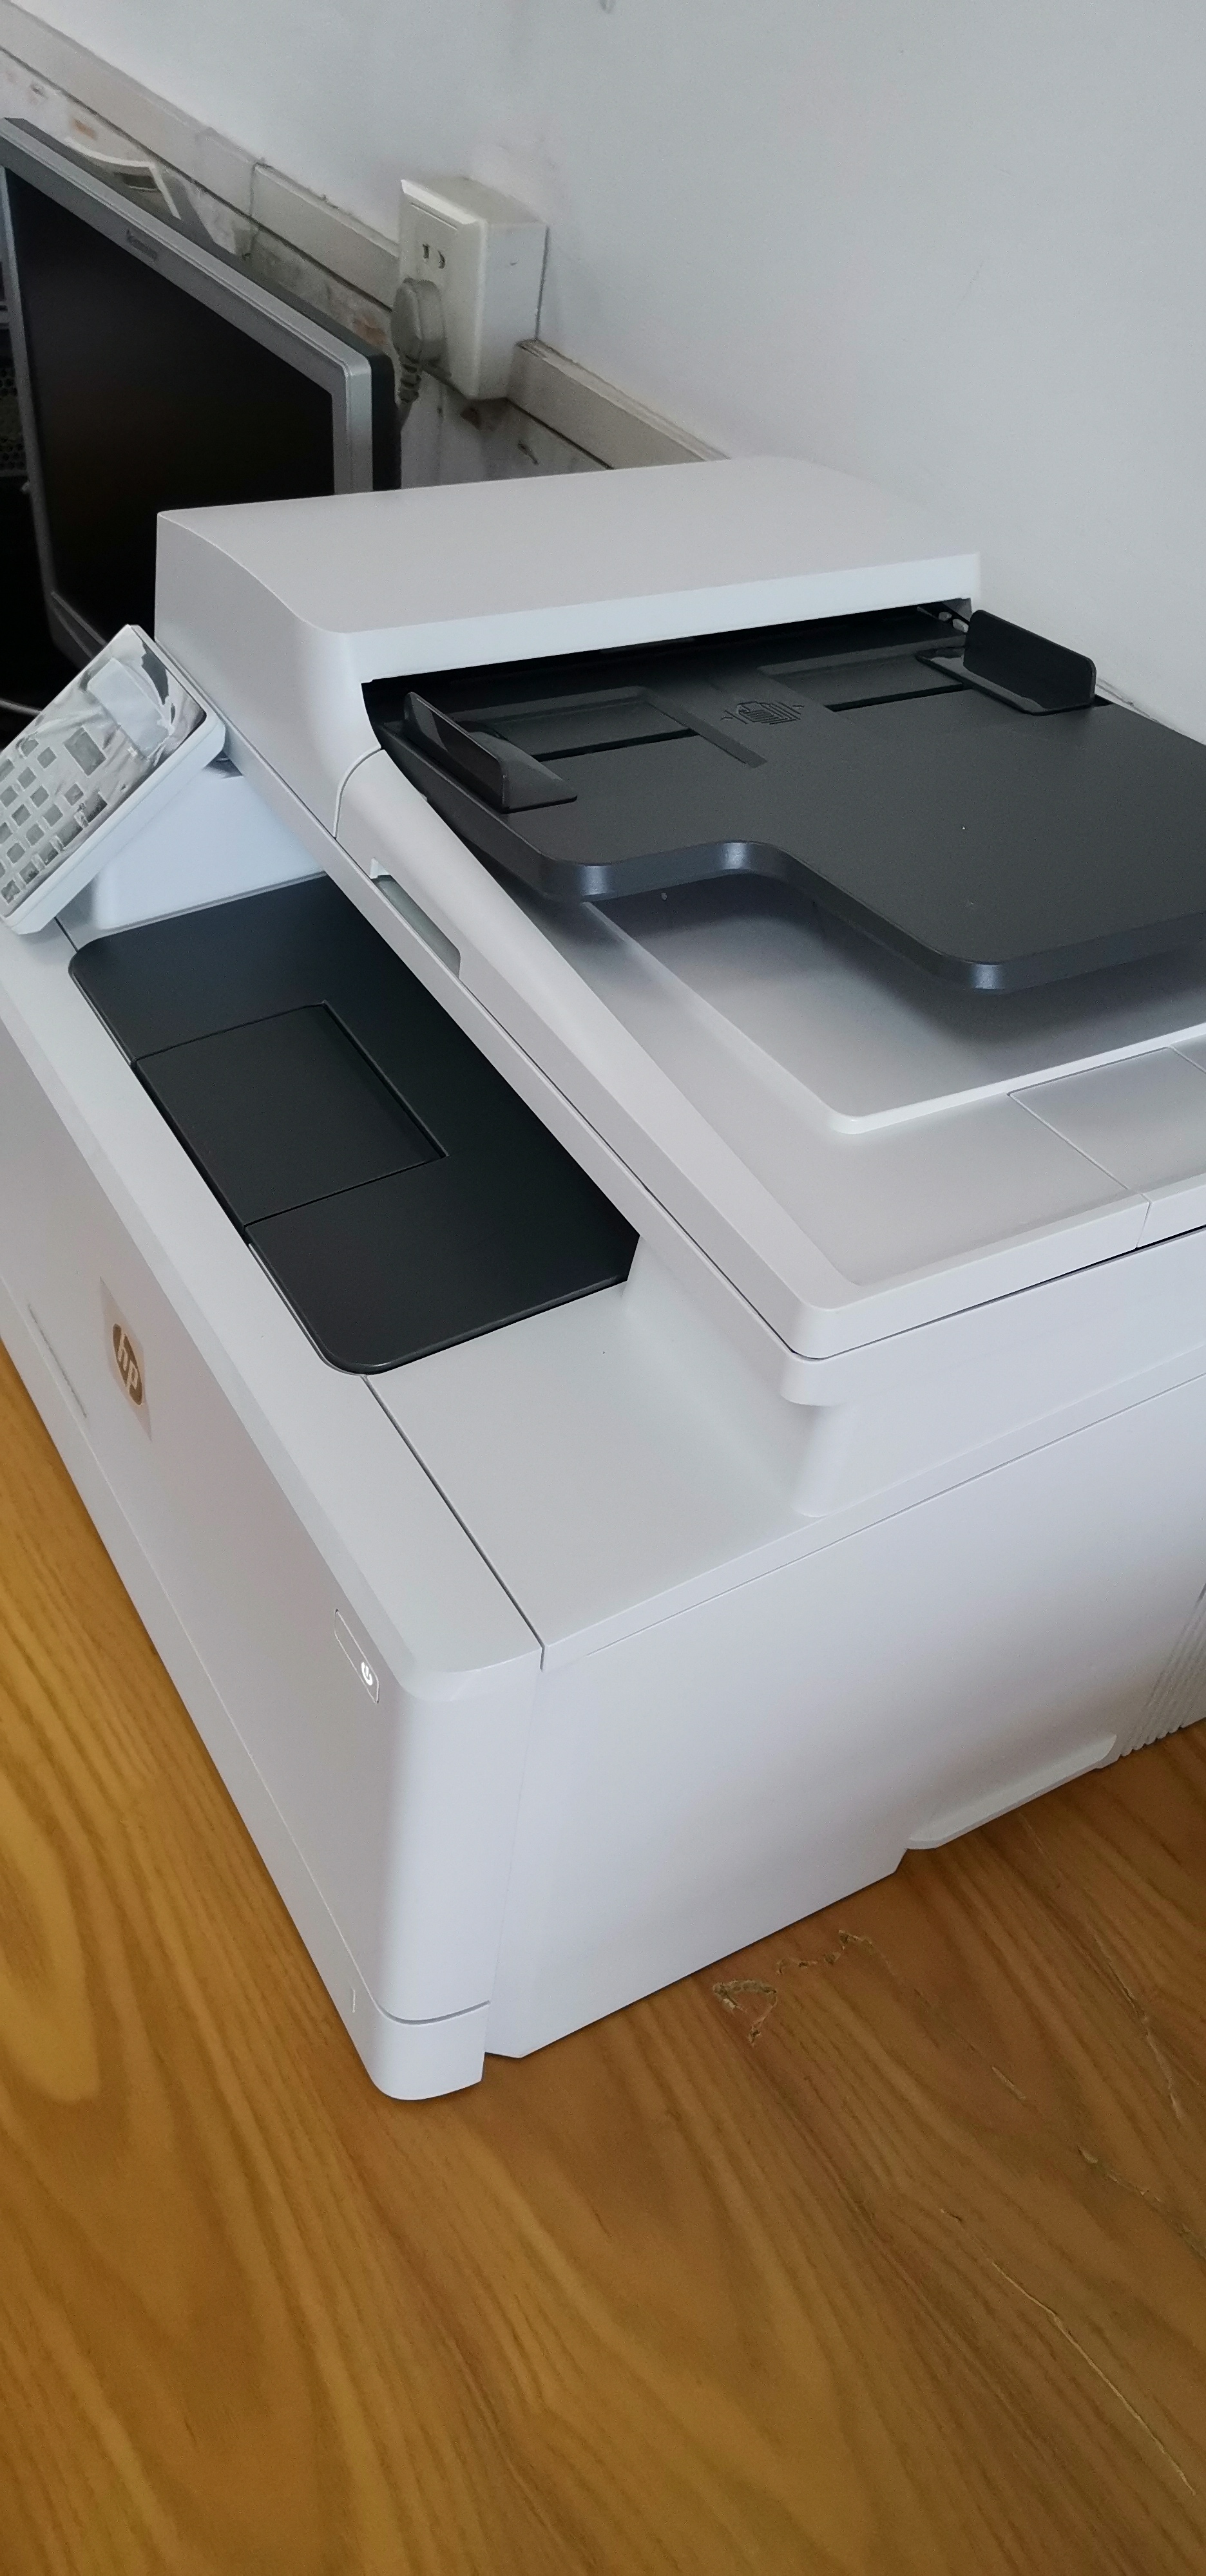 惠普hp m181fw 彩色激光打印一体机无线手机打印复印一体机打印复印